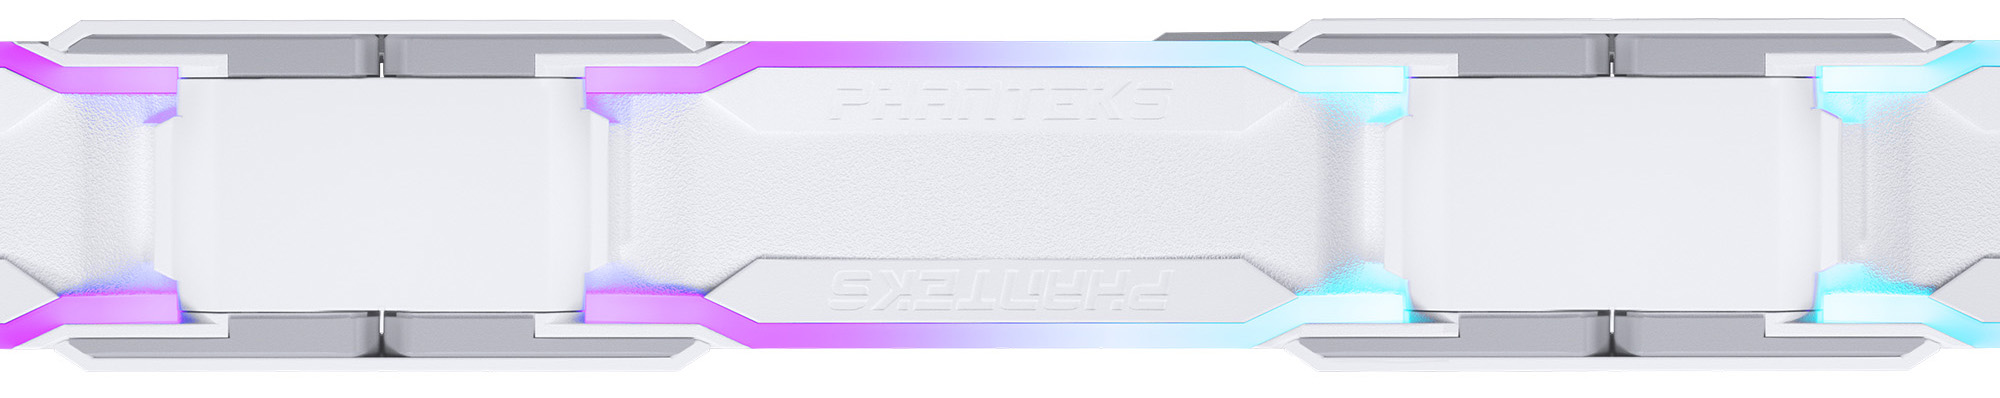 Phanteks - Ventilador Phanteks D30 PWM D-RGB Blanco - 120mm